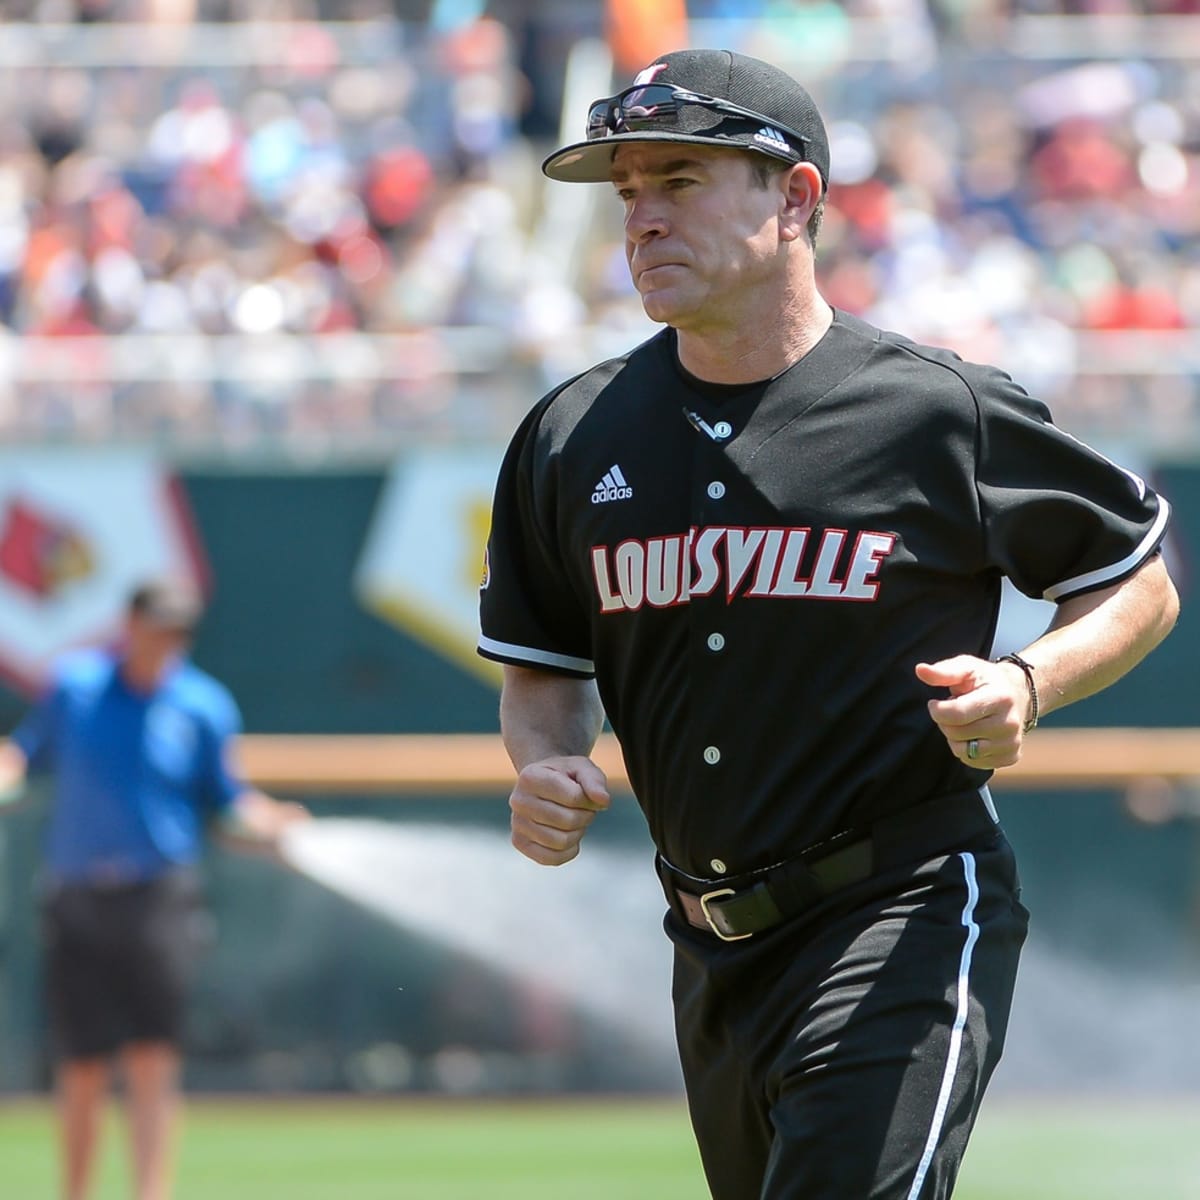 Louisville Baseball makes D1Baseball's “Eight for Omaha” in 2021